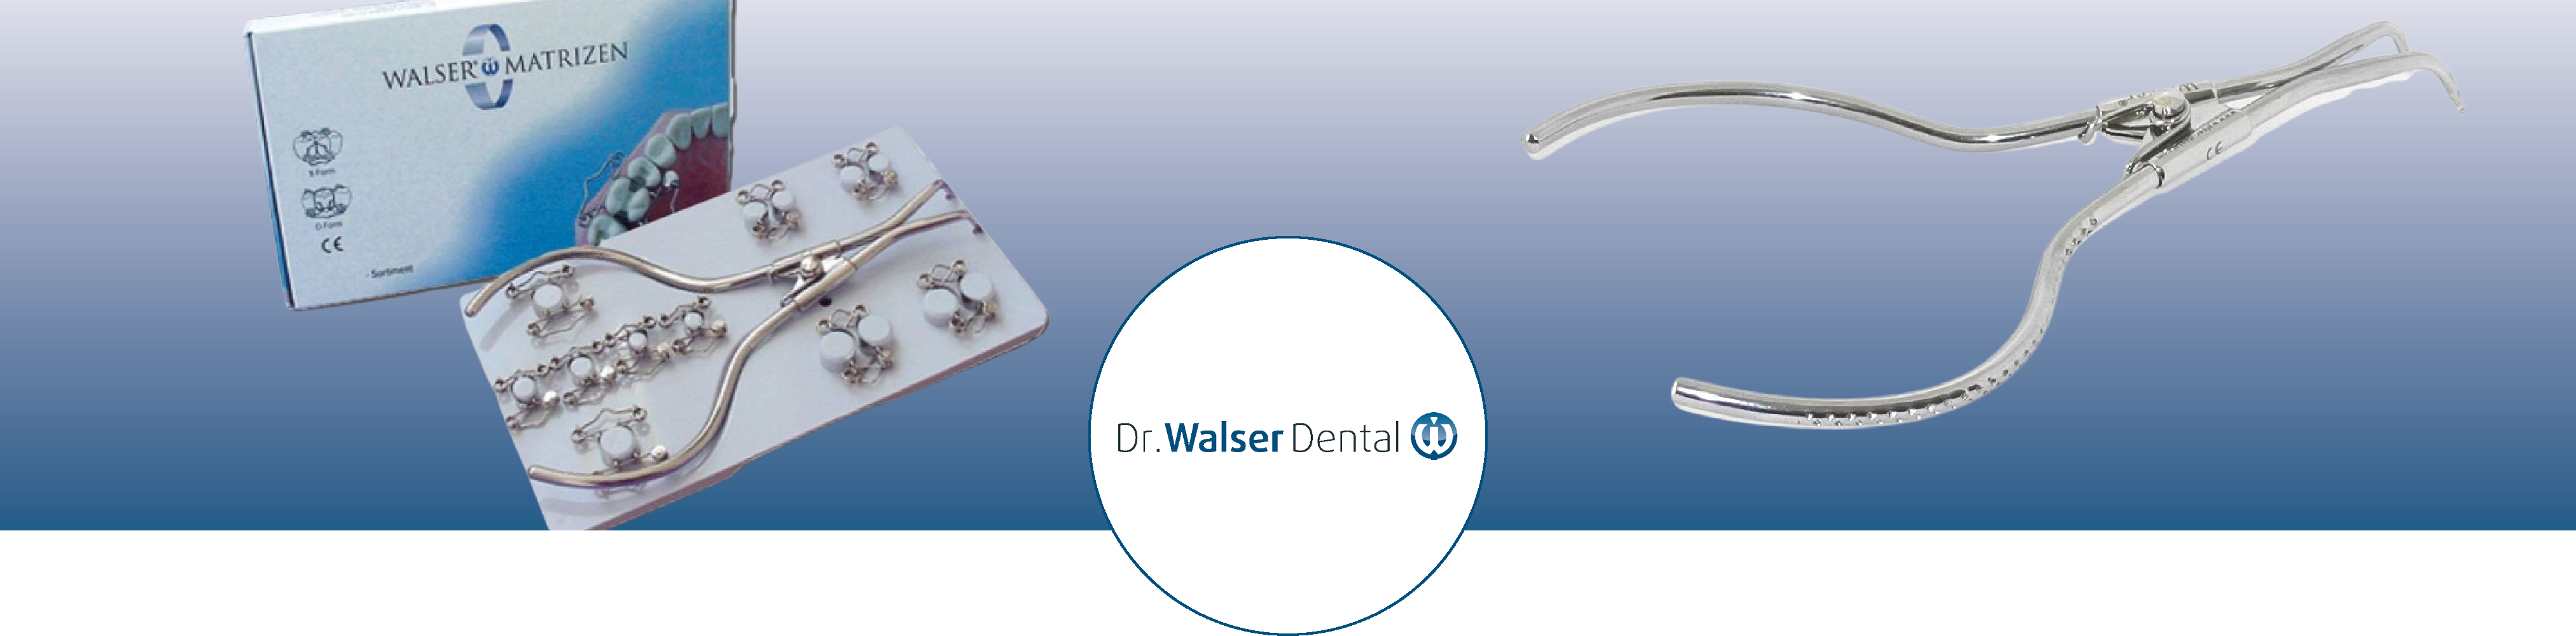 banner_dr_walser_dental